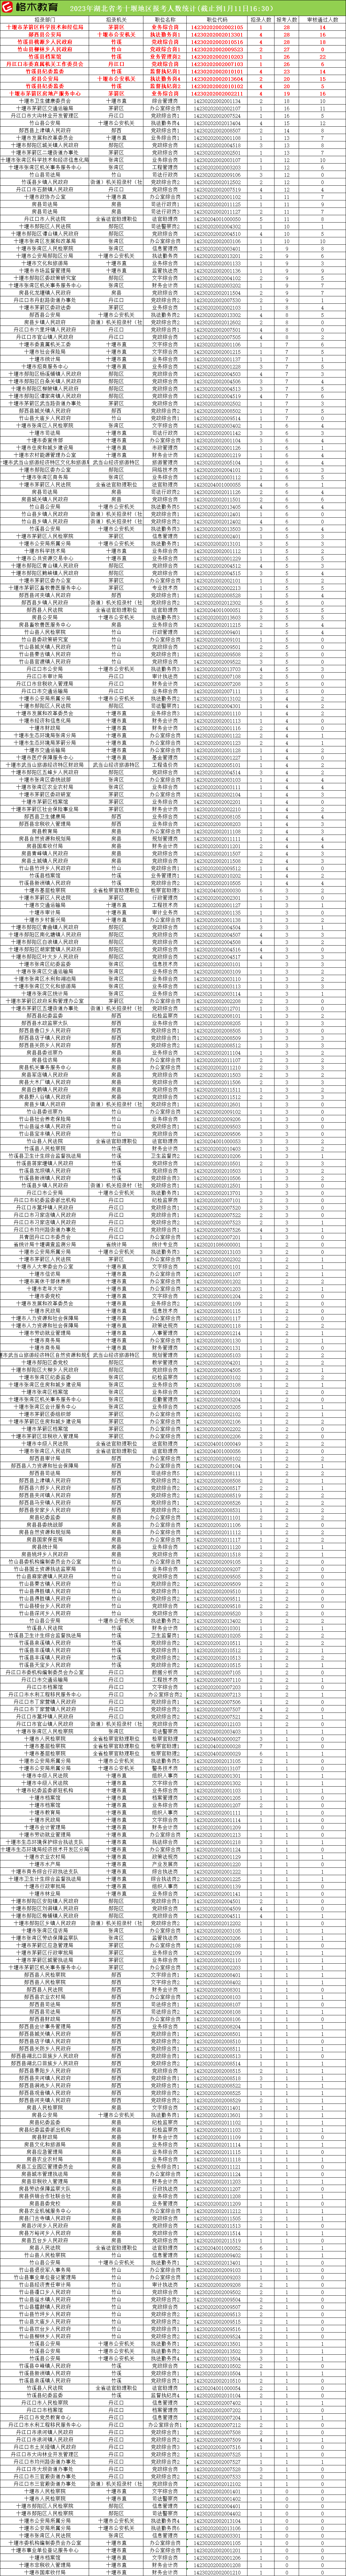 【格木教育整理】20230111省考报名情况(截止到1月11日16:30）